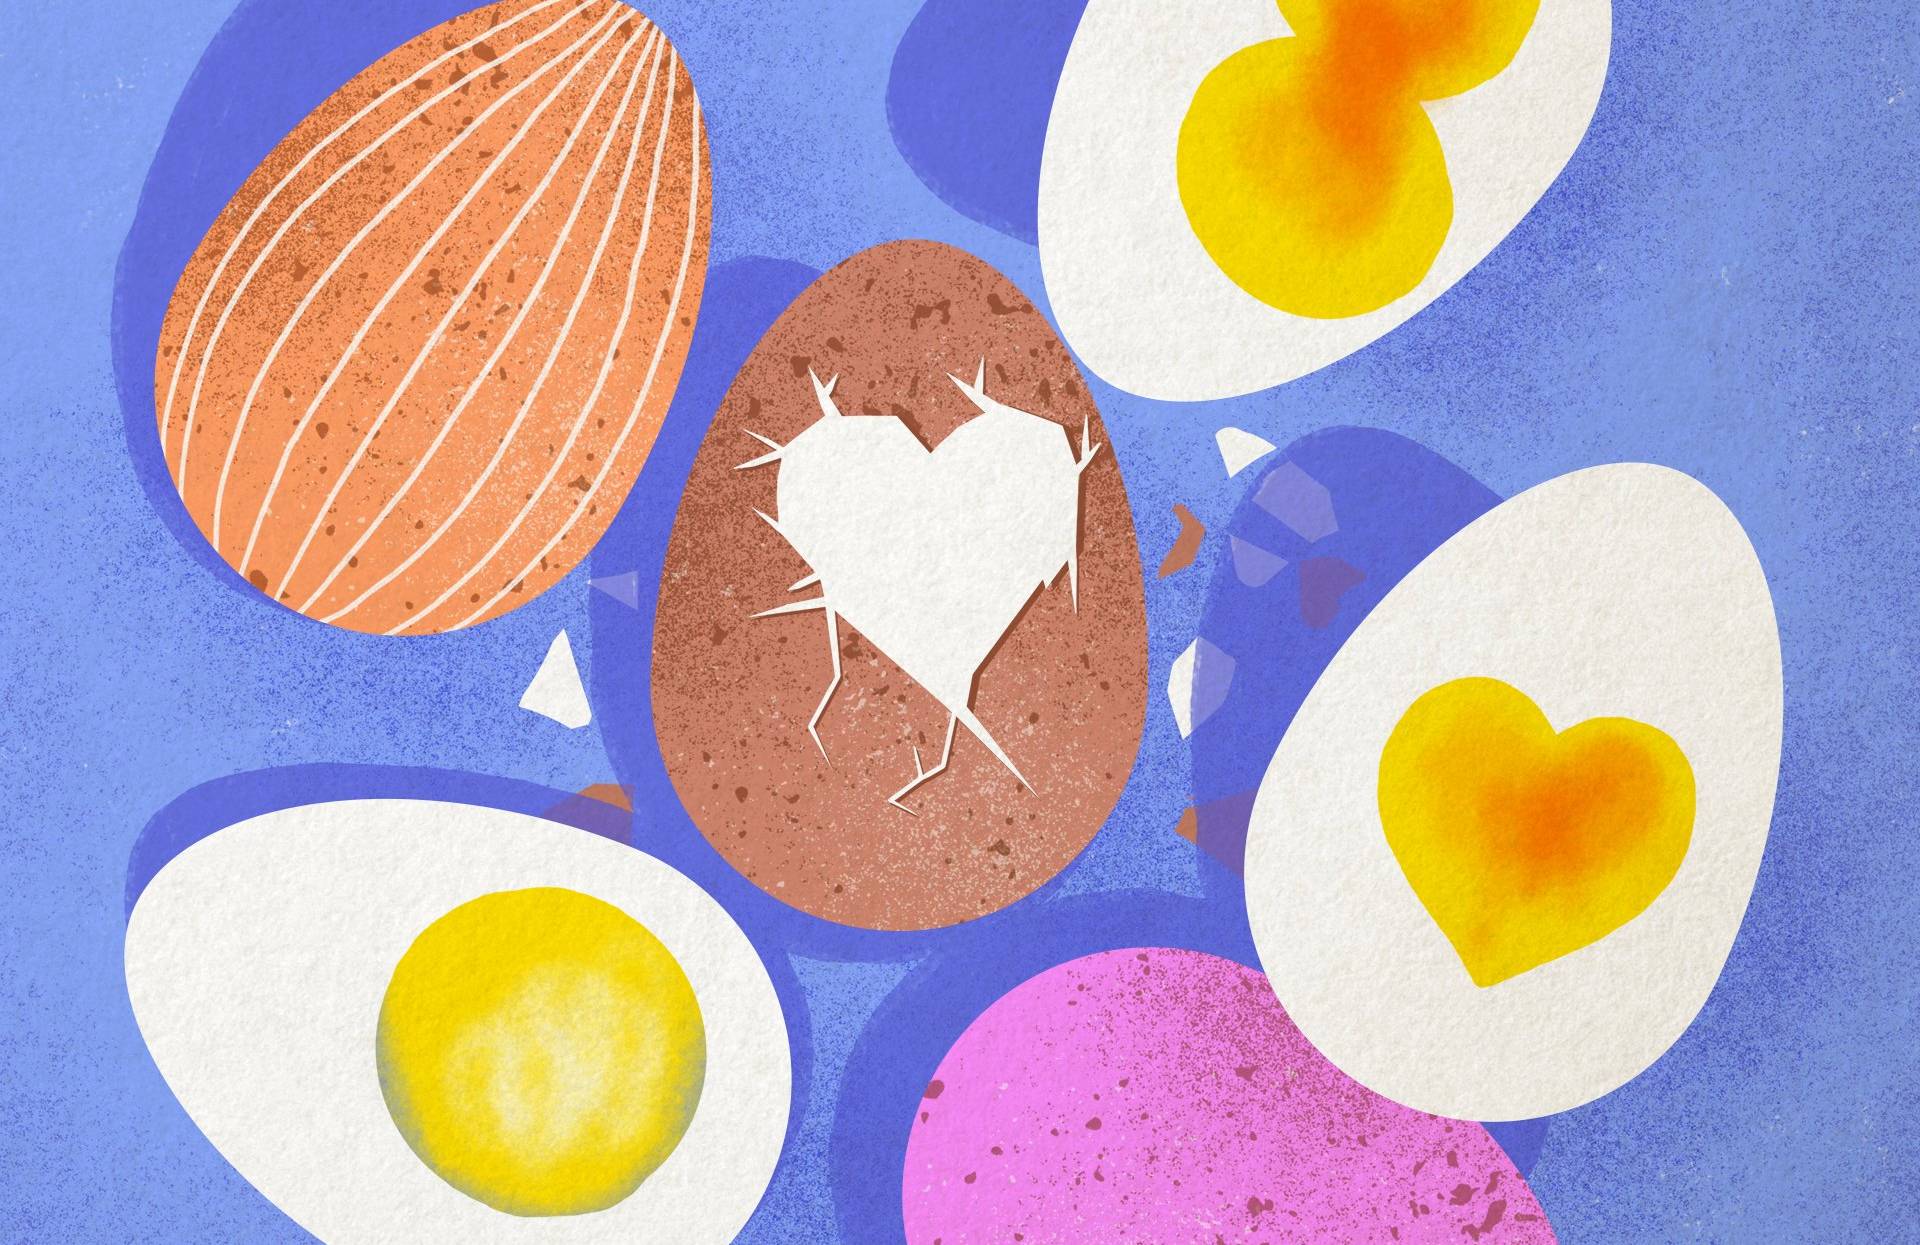 Rysunek kilku jaj w kolorowych skorupkach i kilka połówek ugotowanego jajka na twardo